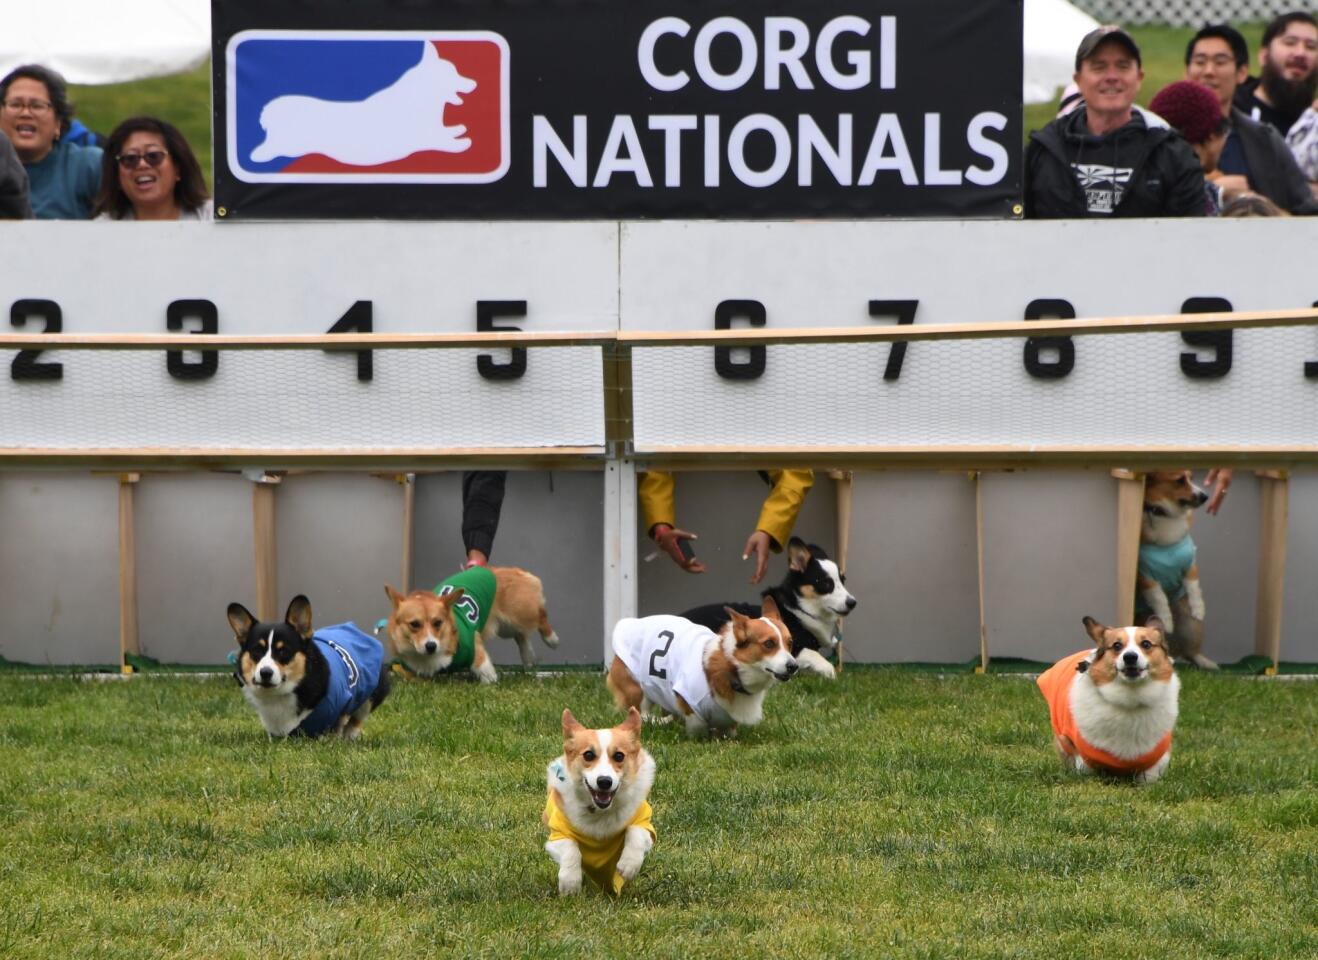 Corgis run make a dash in the Southern California Corgi Nationals championship at Santa Anita Park on Sunday.